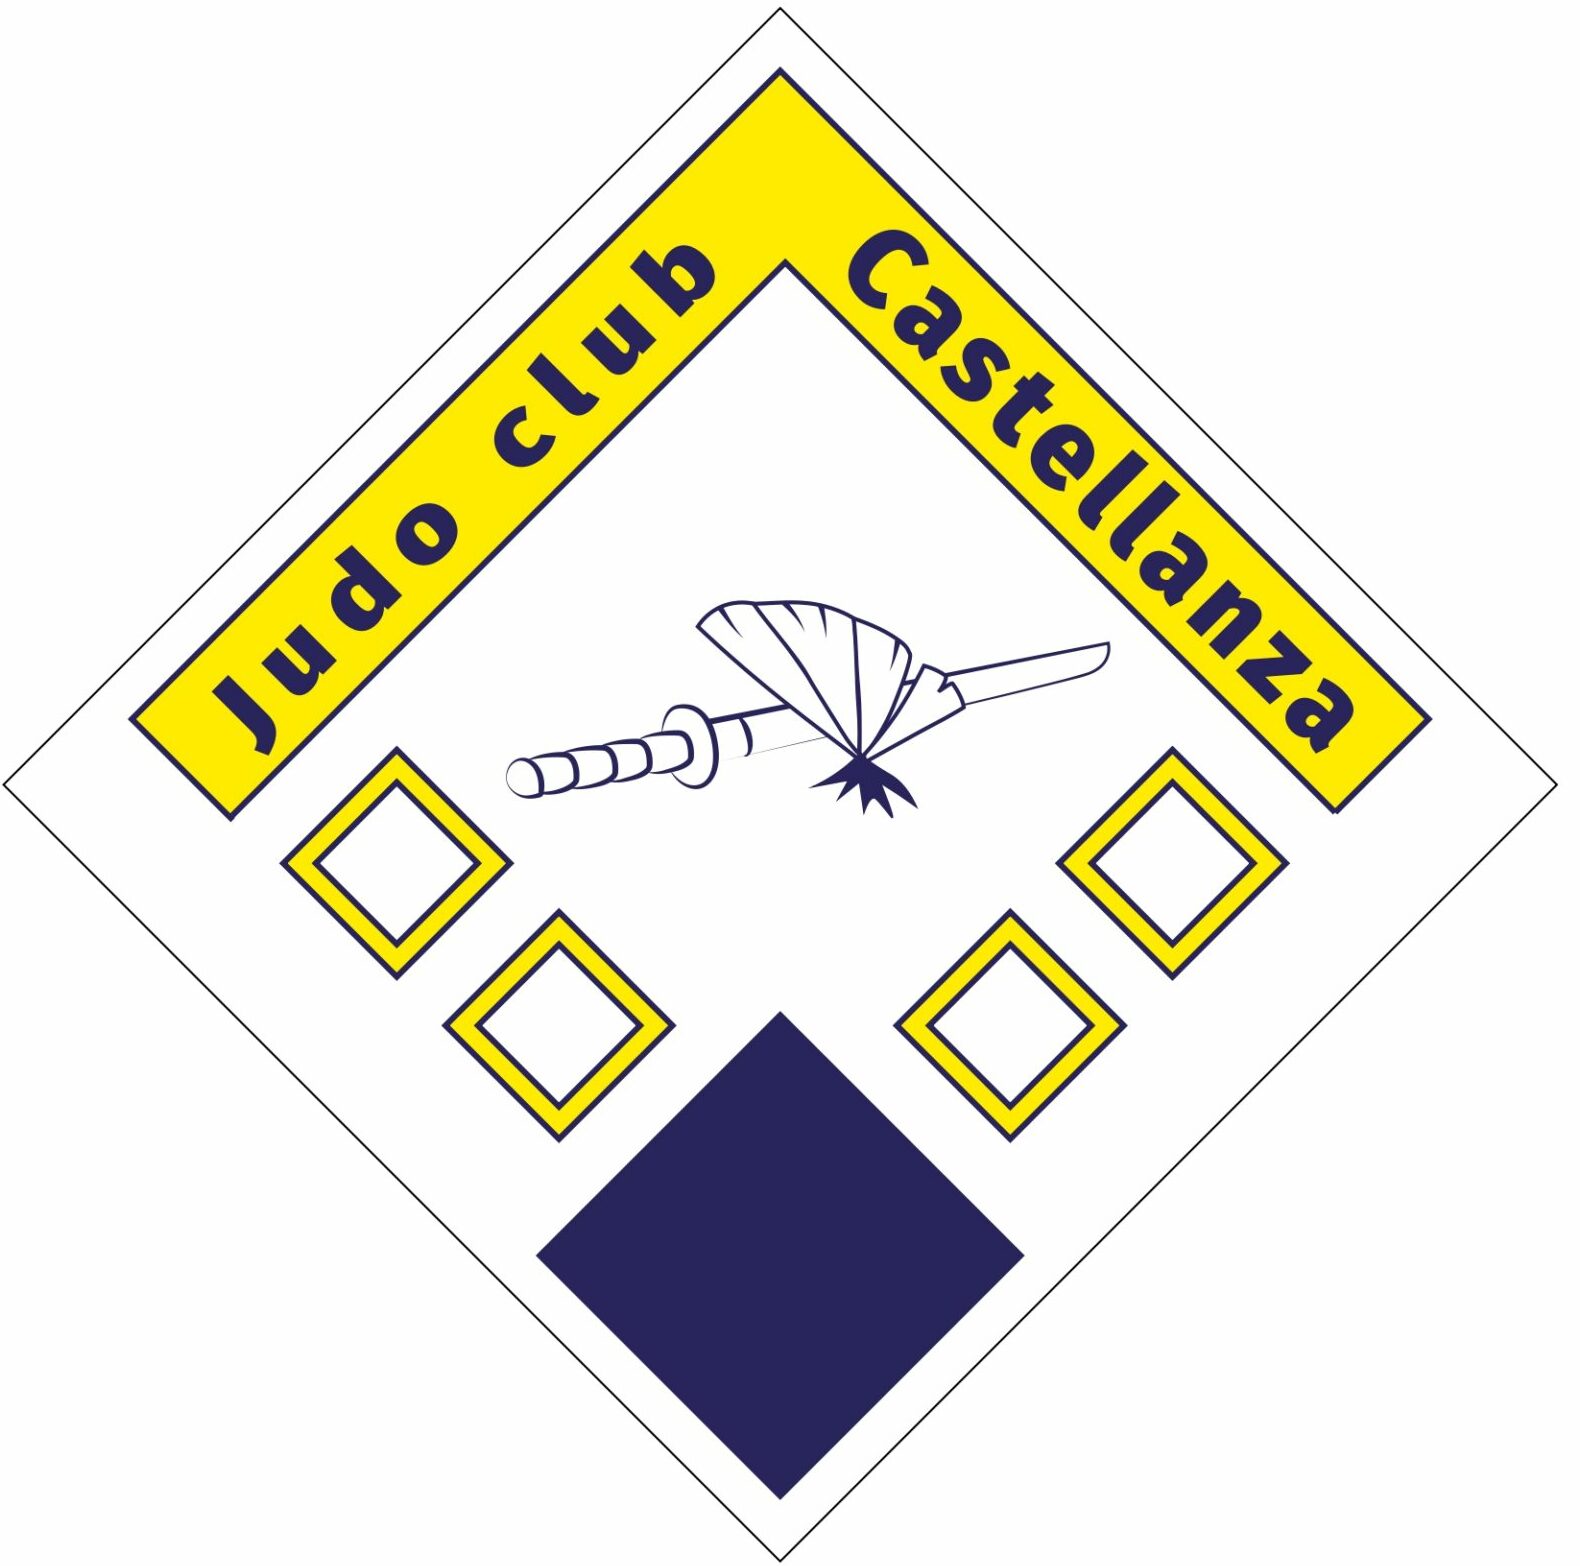 Judo Club Castellanza